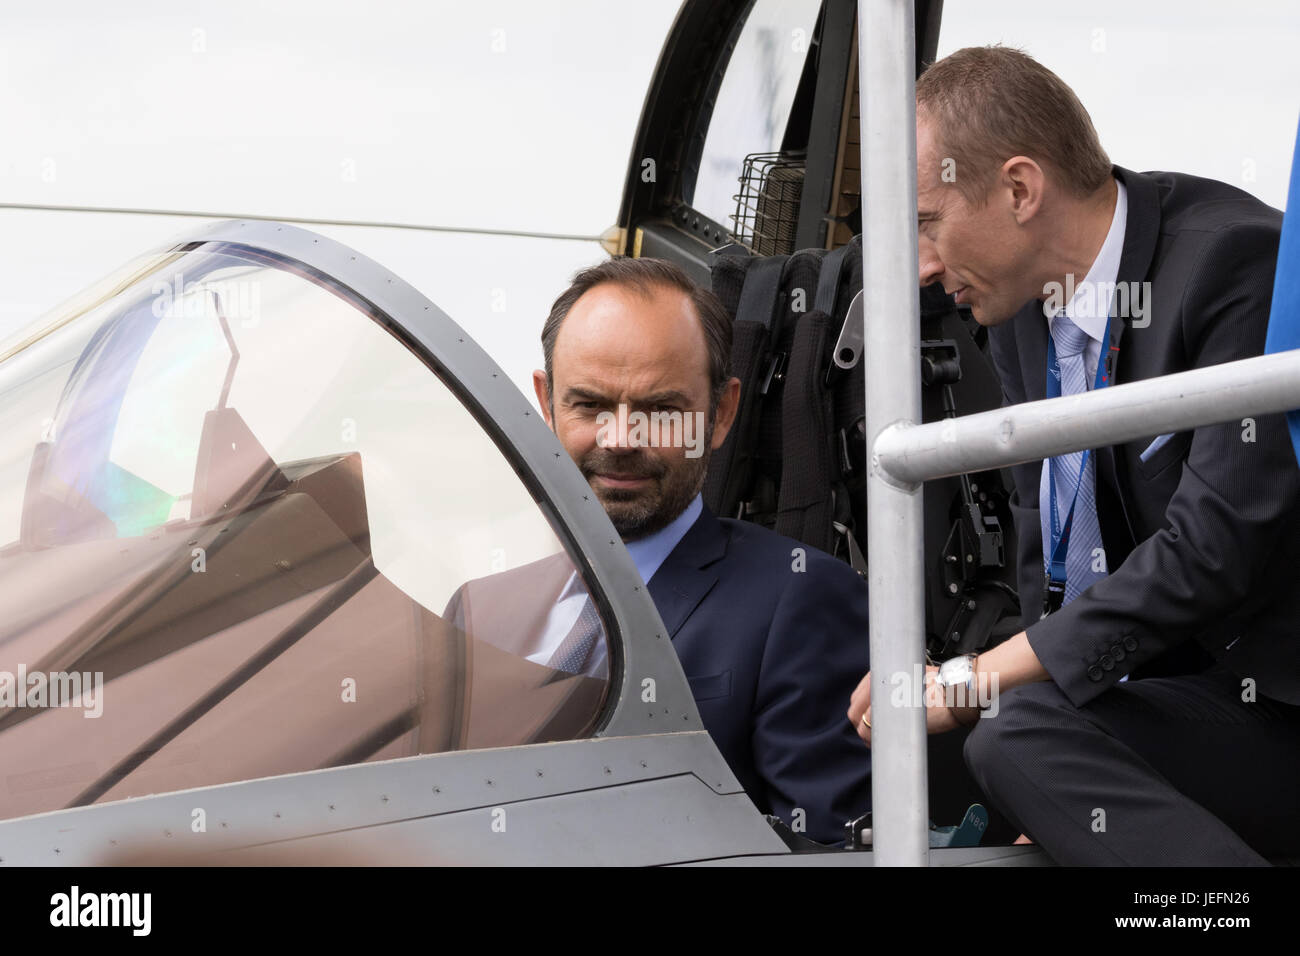 Parigi, Francia - 23 JUN 2017: il Primo ministro francese Edouard Philippe nel pozzetto di un Rafale fighter jet durante una visita alla società Dassault a Foto Stock